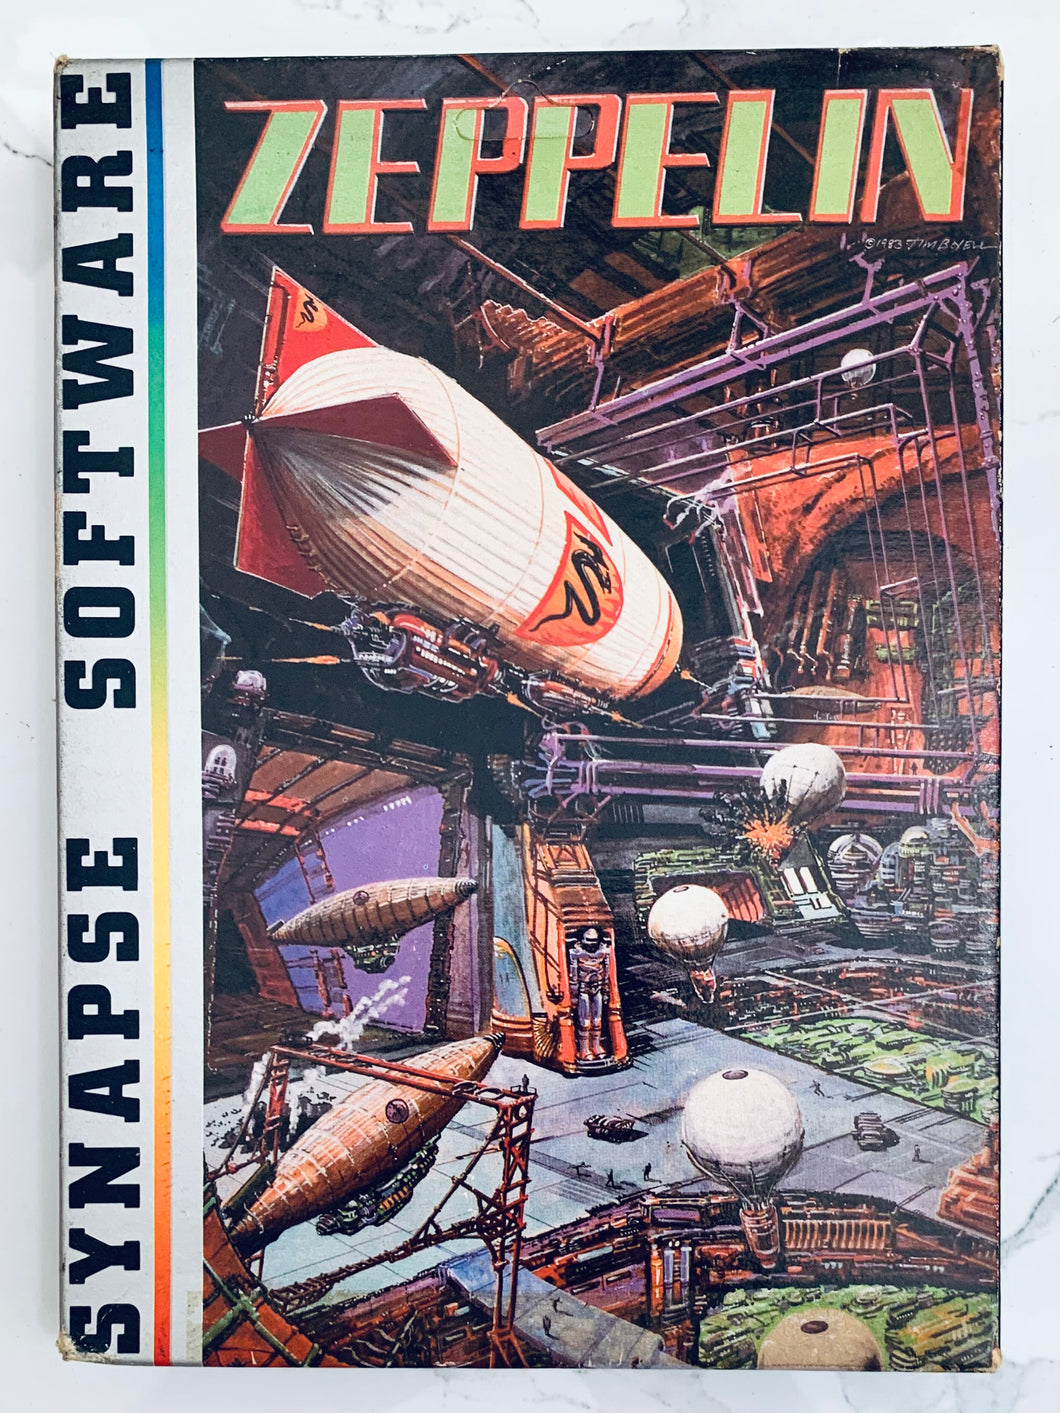 Zeppelin - Atari 400/800/1200 XL/XE - Disk - NTSC - CIB